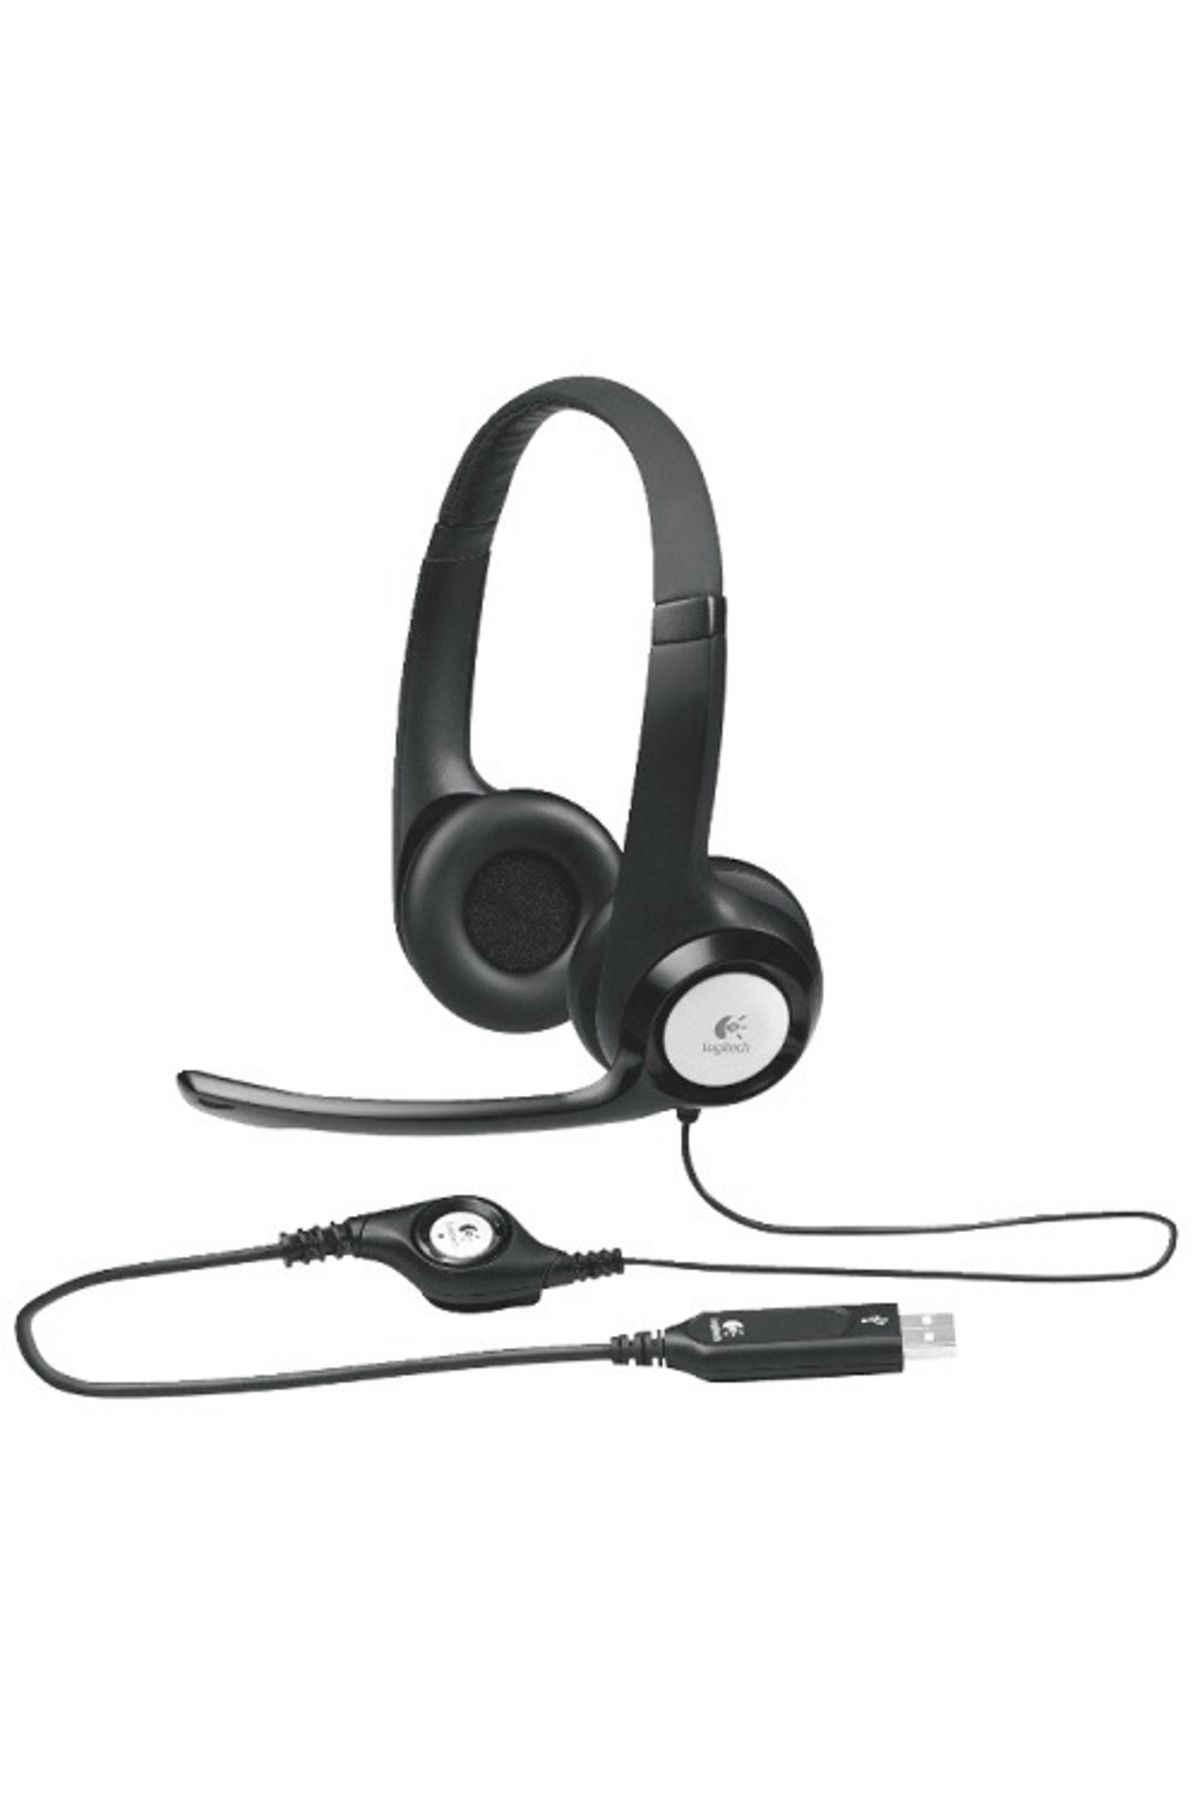 logitech H390 Kablolu Kulak Üstü Mikrofonlu Kulaklık Dijital Stereo Ses Katlanabilir Gürültü Önleyici